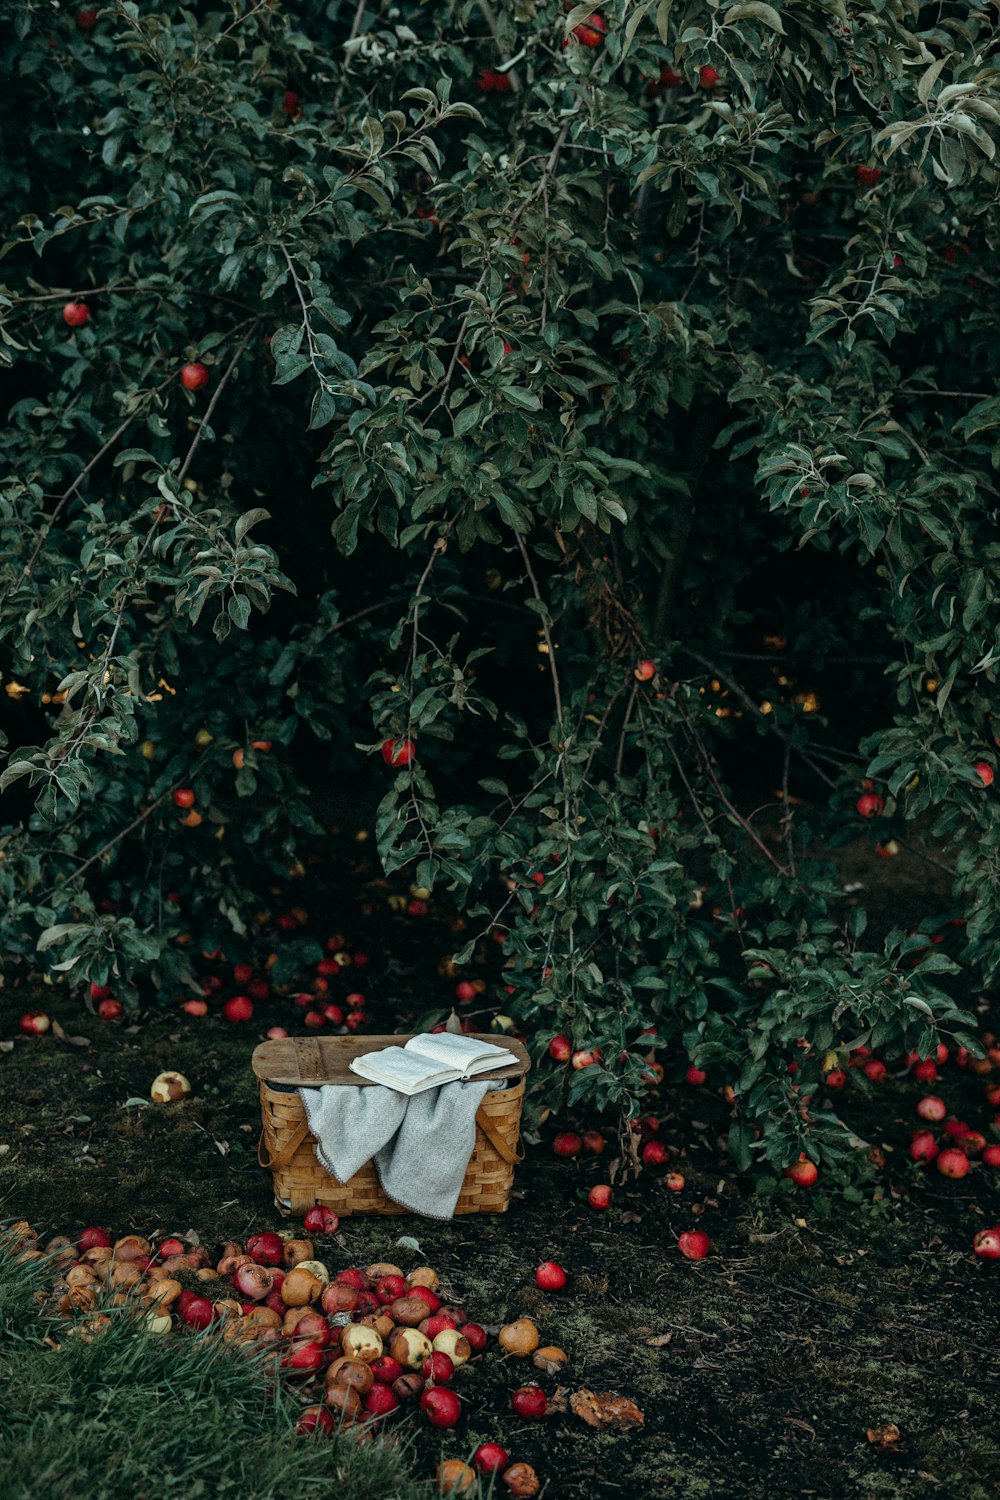 foto da cesta perto de frutas e árvore